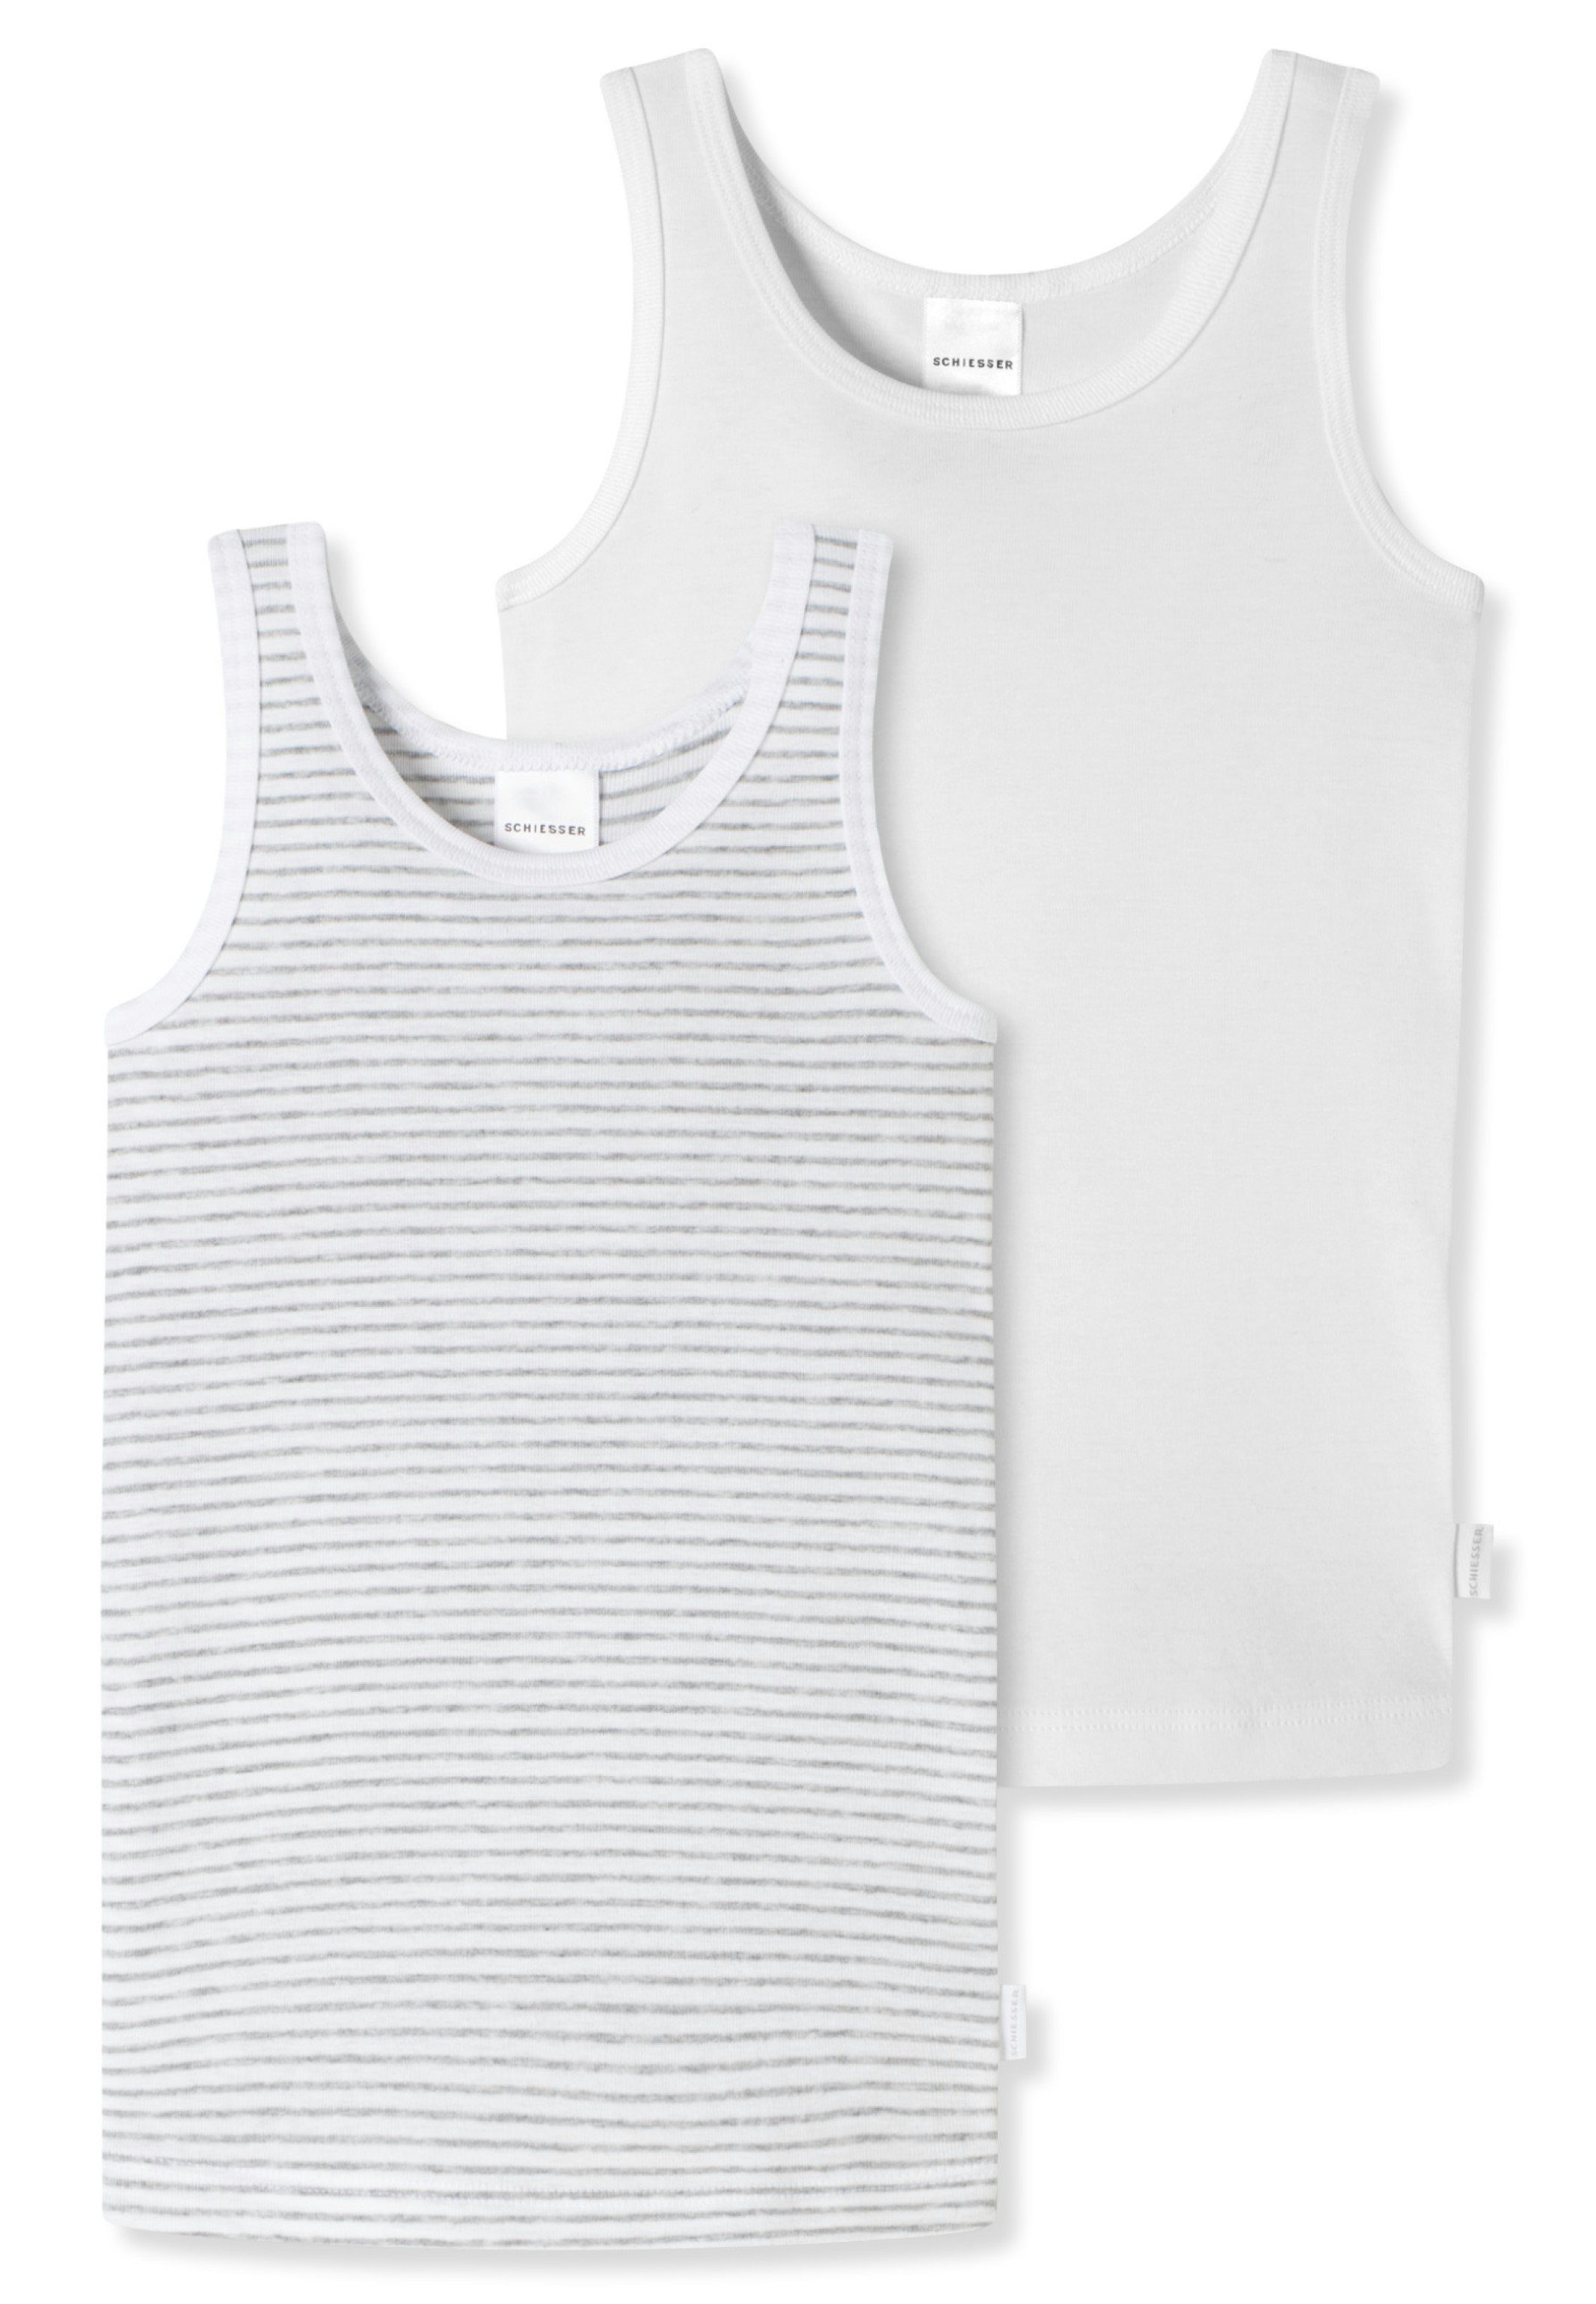 Schiesser Unterhemd 2er Pack Kids Girls Feinripp Organic Cotton (Spar-Set, 2-St) Unterhemd / Top - Baumwolle - Mit tonalem Einfass an Hals und Arm Weiß gemustert - 911